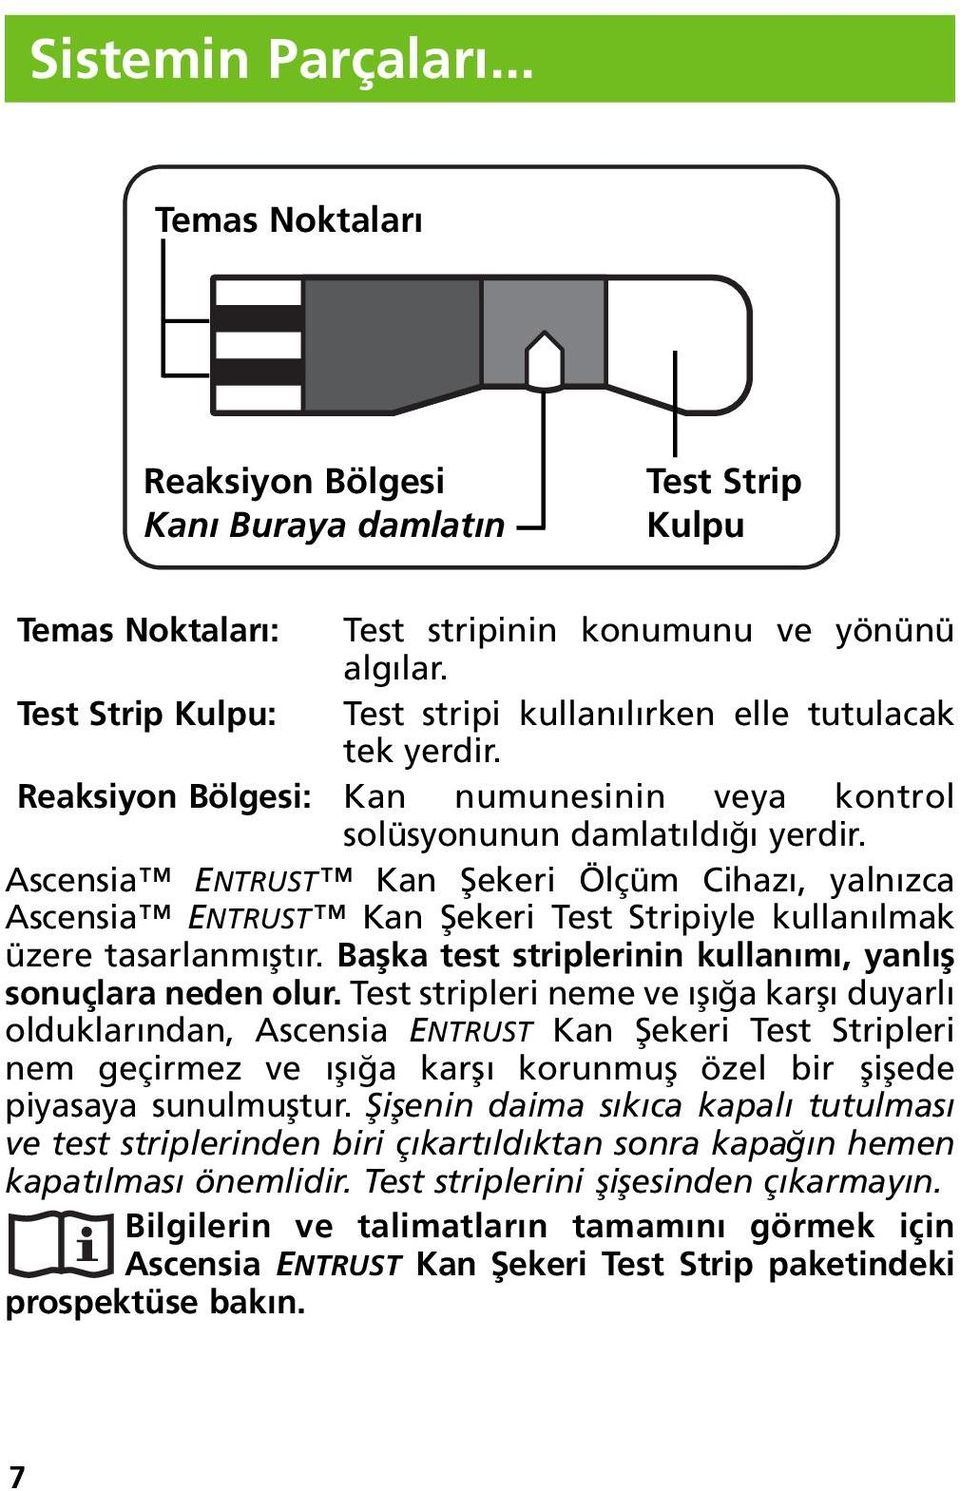 Ascensia ENTRUST Kan Şekeri Ölçüm Cihazı, yalnızca Ascensia ENTRUST Kan Şekeri Test Stripiyle kullanılmak üzere tasarlanmıştır. Başka test striplerinin kullanımı, yanlış sonuçlara neden olur.